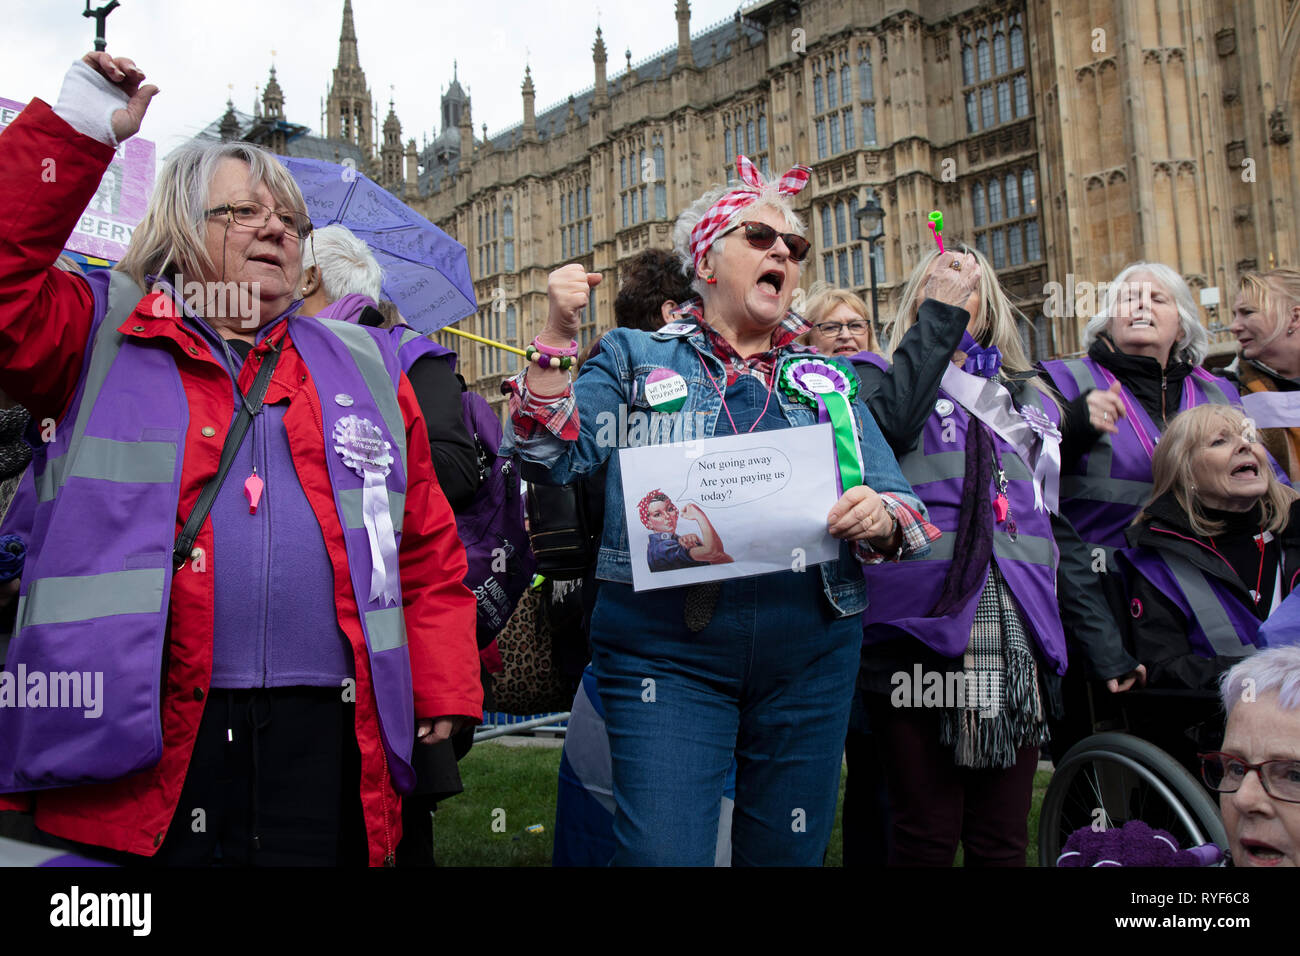 Donne WASPI protesta si unisce al Anti Brexit dimostrazione dopo la rottura attraverso le barriere sul College Green in Westminster il giorno dopo il "voto significativa' quando MPs ha ancora una volta respinto il primo ministro Brexit accordo di ritiro e prima di una votazione sulla rimozione della possibilità di un No Deal Brexit il 13 marzo 2019 a Londra, Inghilterra, Regno Unito. Donne contro la pensione statale la disuguaglianza è un volontario'organizzazione britannica fondata nel 2015 che le campagne contro il modo in cui lo stato dell'età di pensionamento per gli uomini e per le donne è stata eguagliata. Essi chiamano per milioni di donne colpite dal Foto Stock